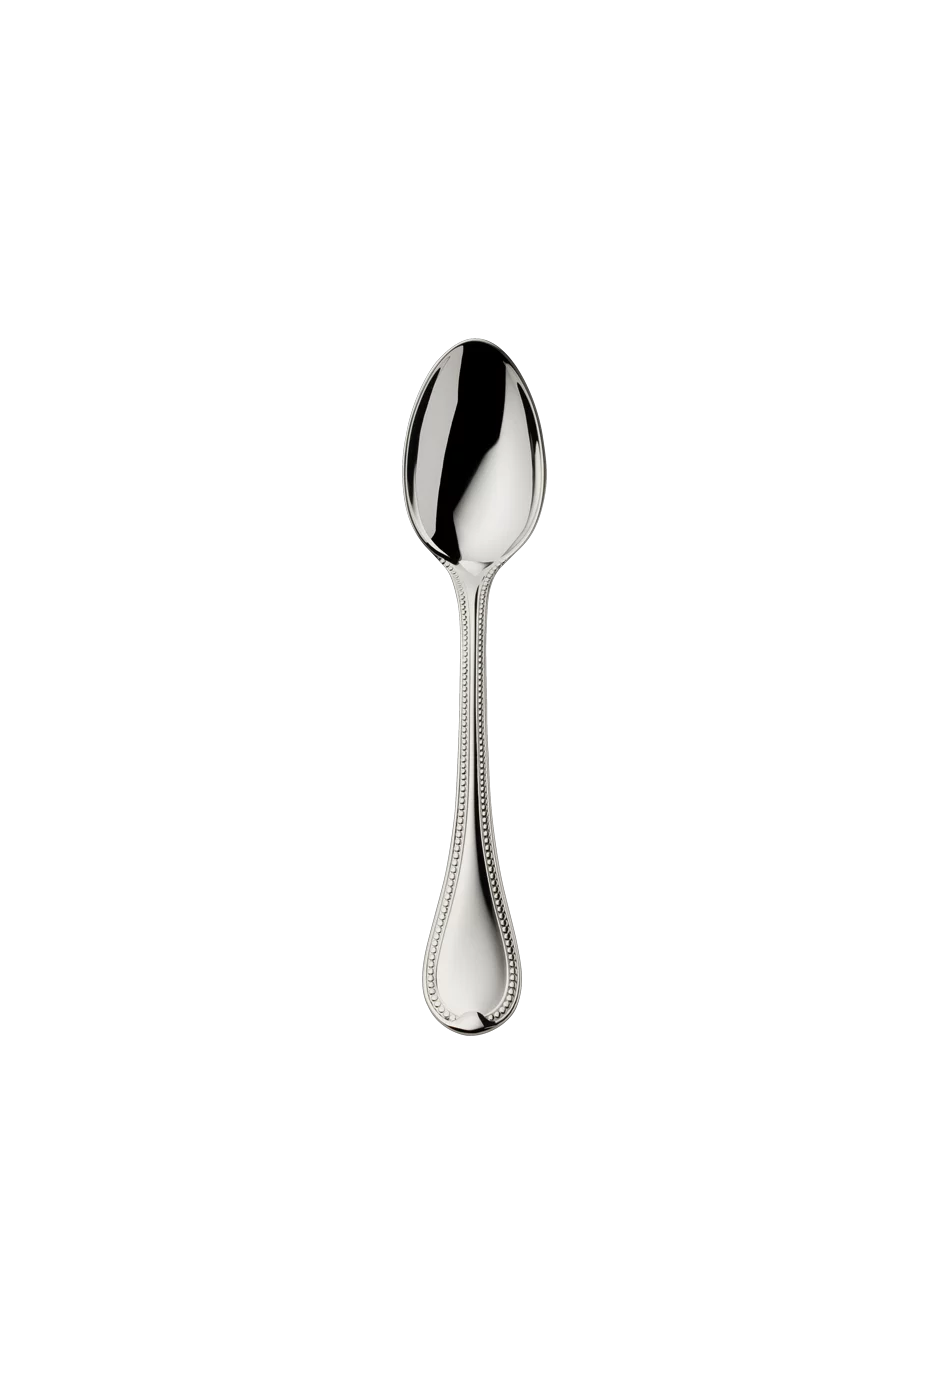 Französisch-Perl Coffee Spoon 14,5 Cm (150g massive silverplated)